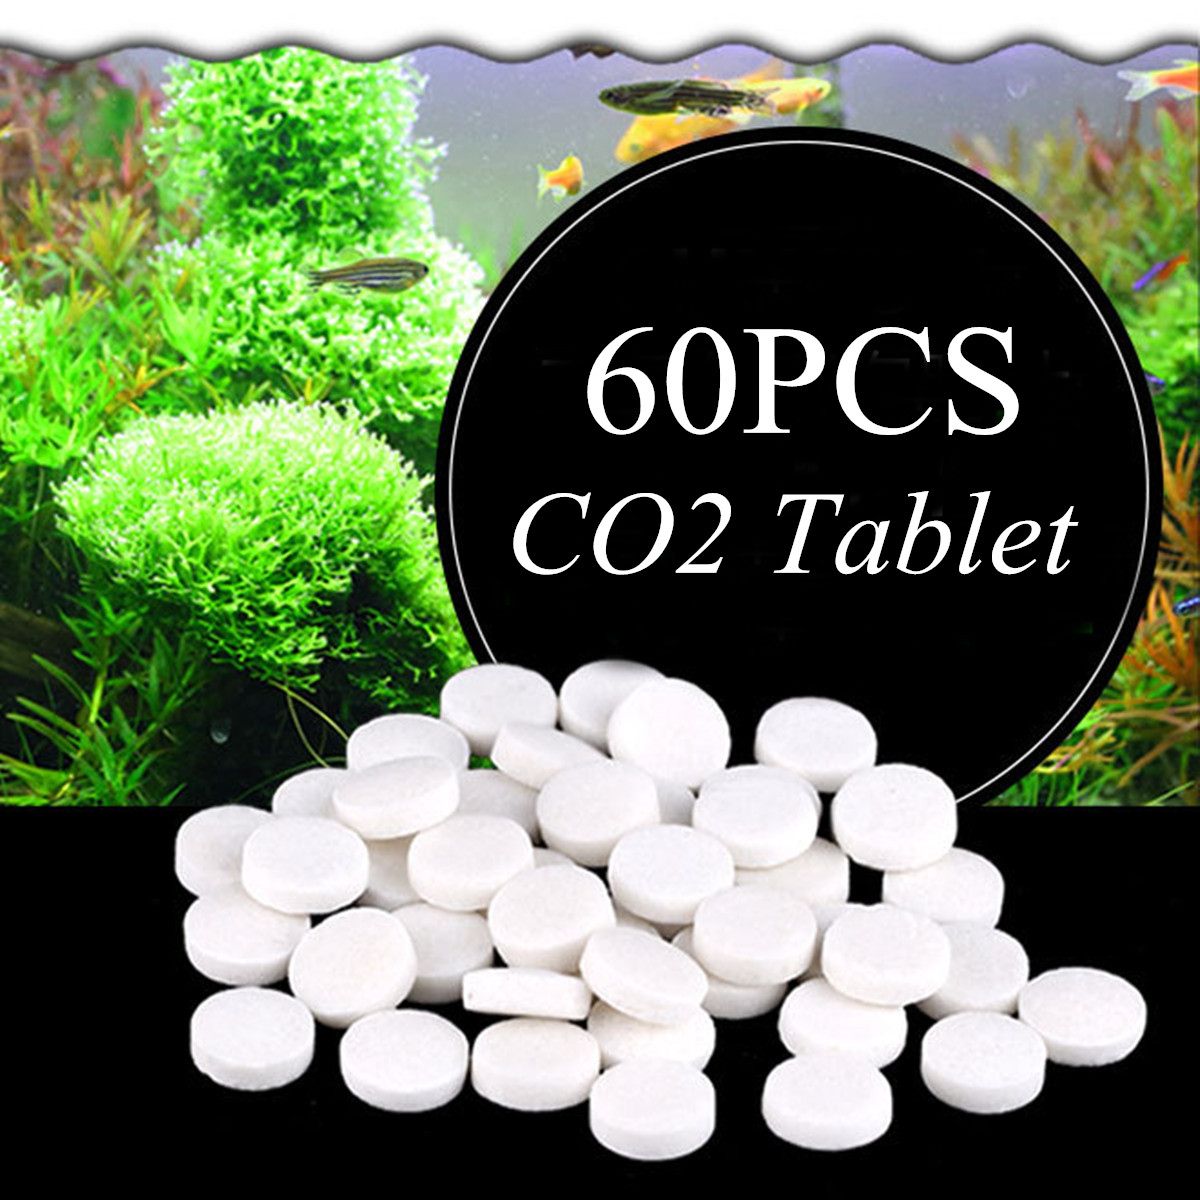 60PCS Aquarium CO2 Carbon Dioxide Tablets Non-toxic For Plants Aquarium Fish Tank Diffuser Water Grass CO2 Aquarium Accessory